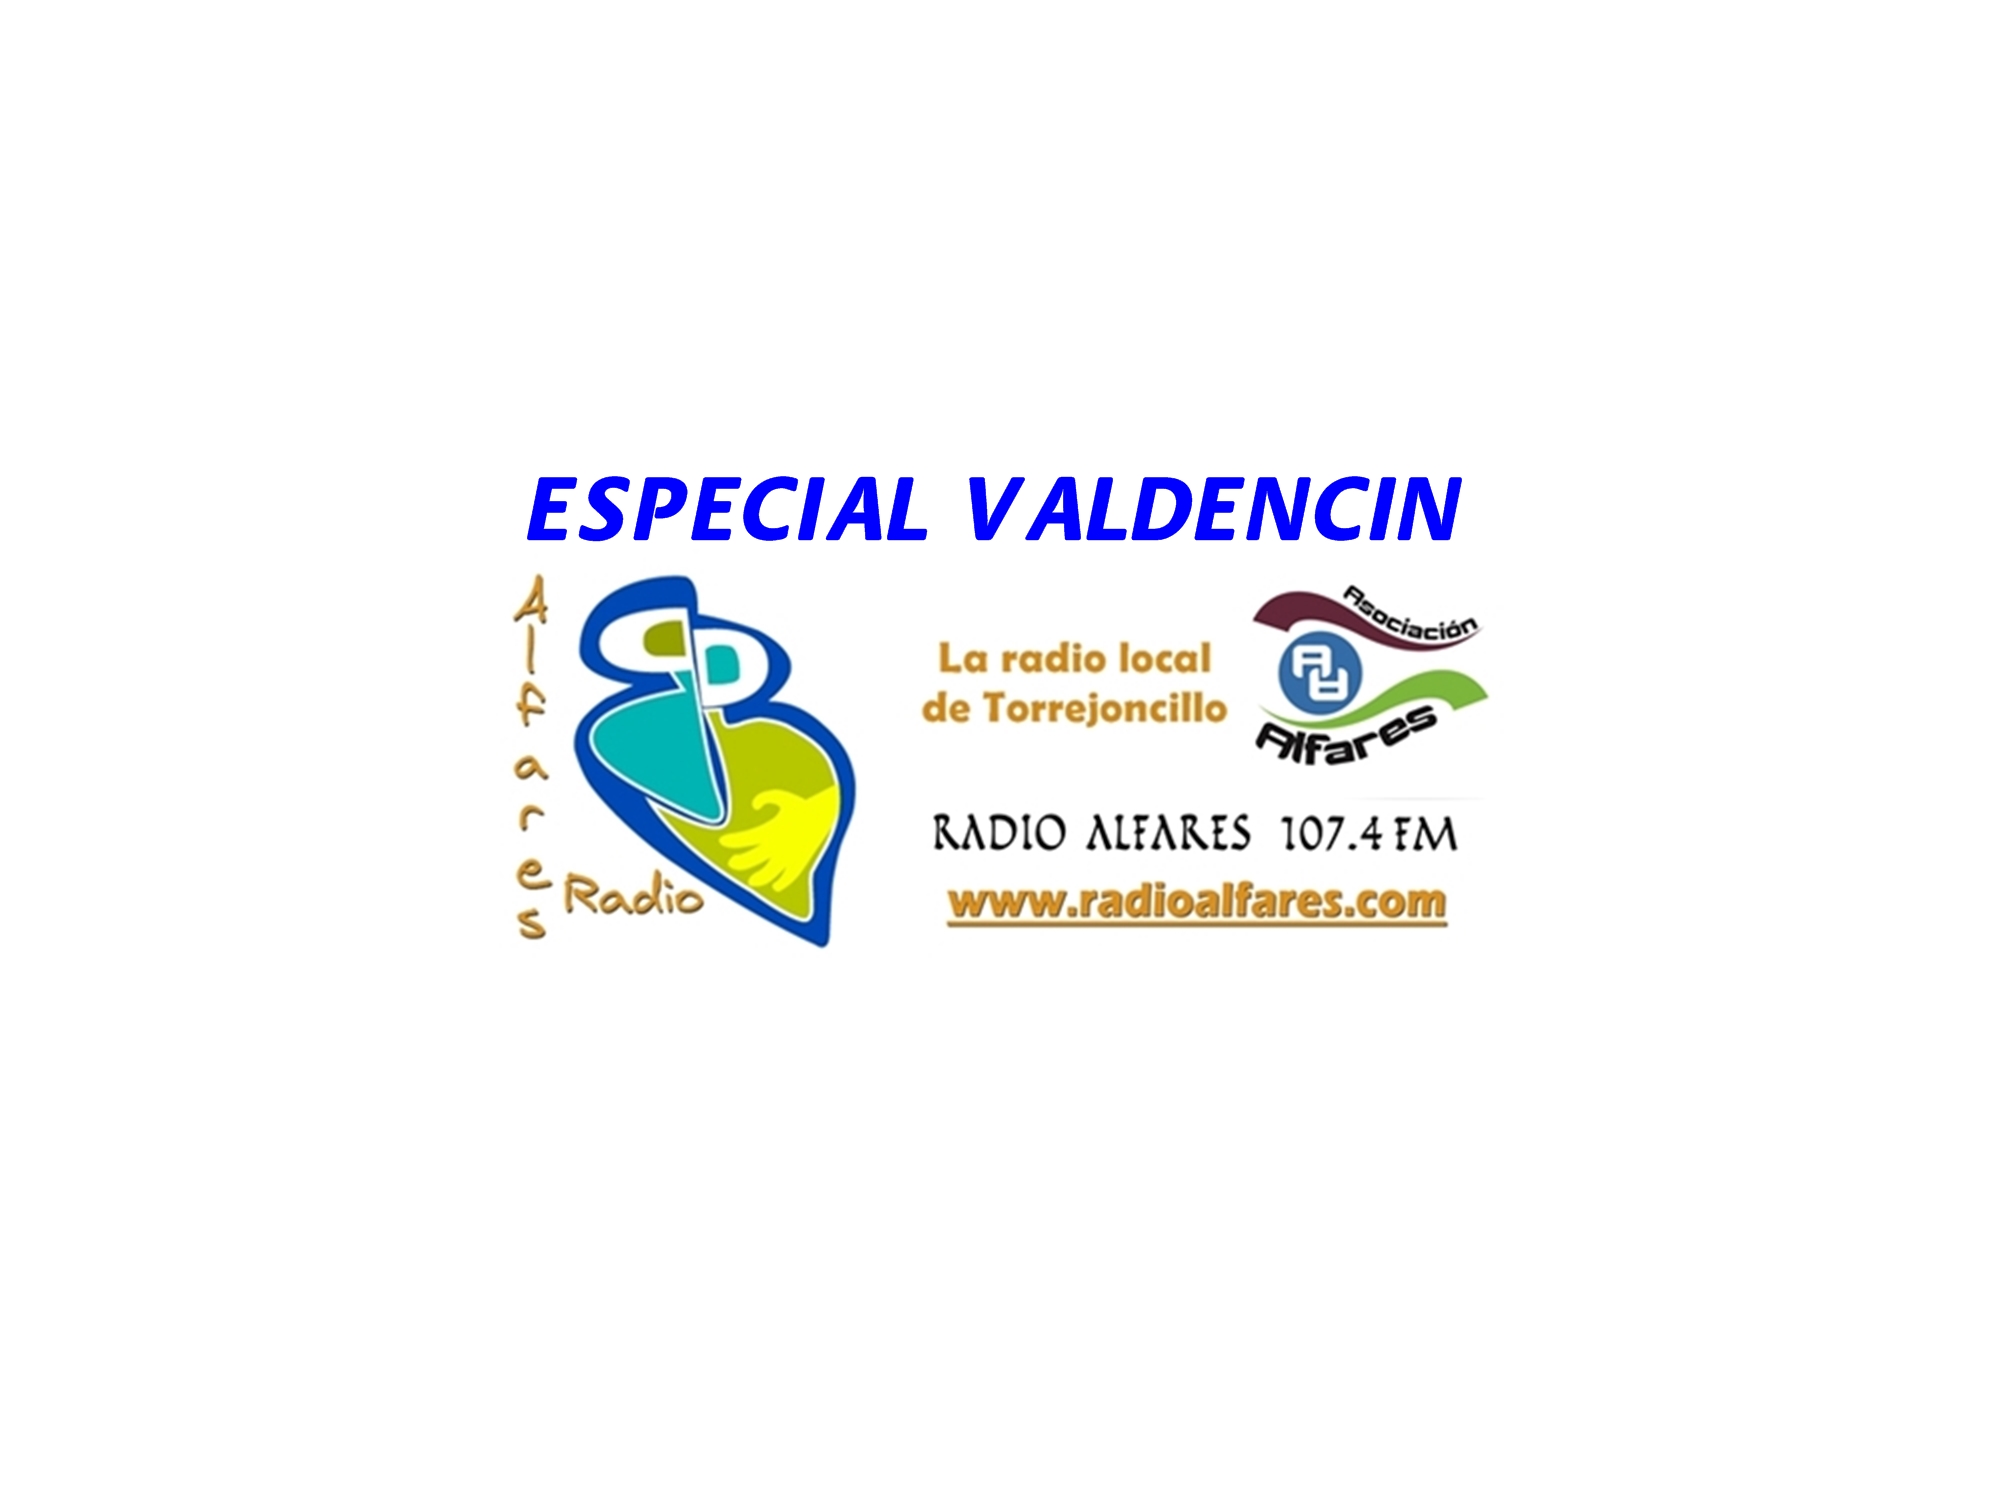 Radio Alfares celebra una especial Fiesta de Valdencin este sábado